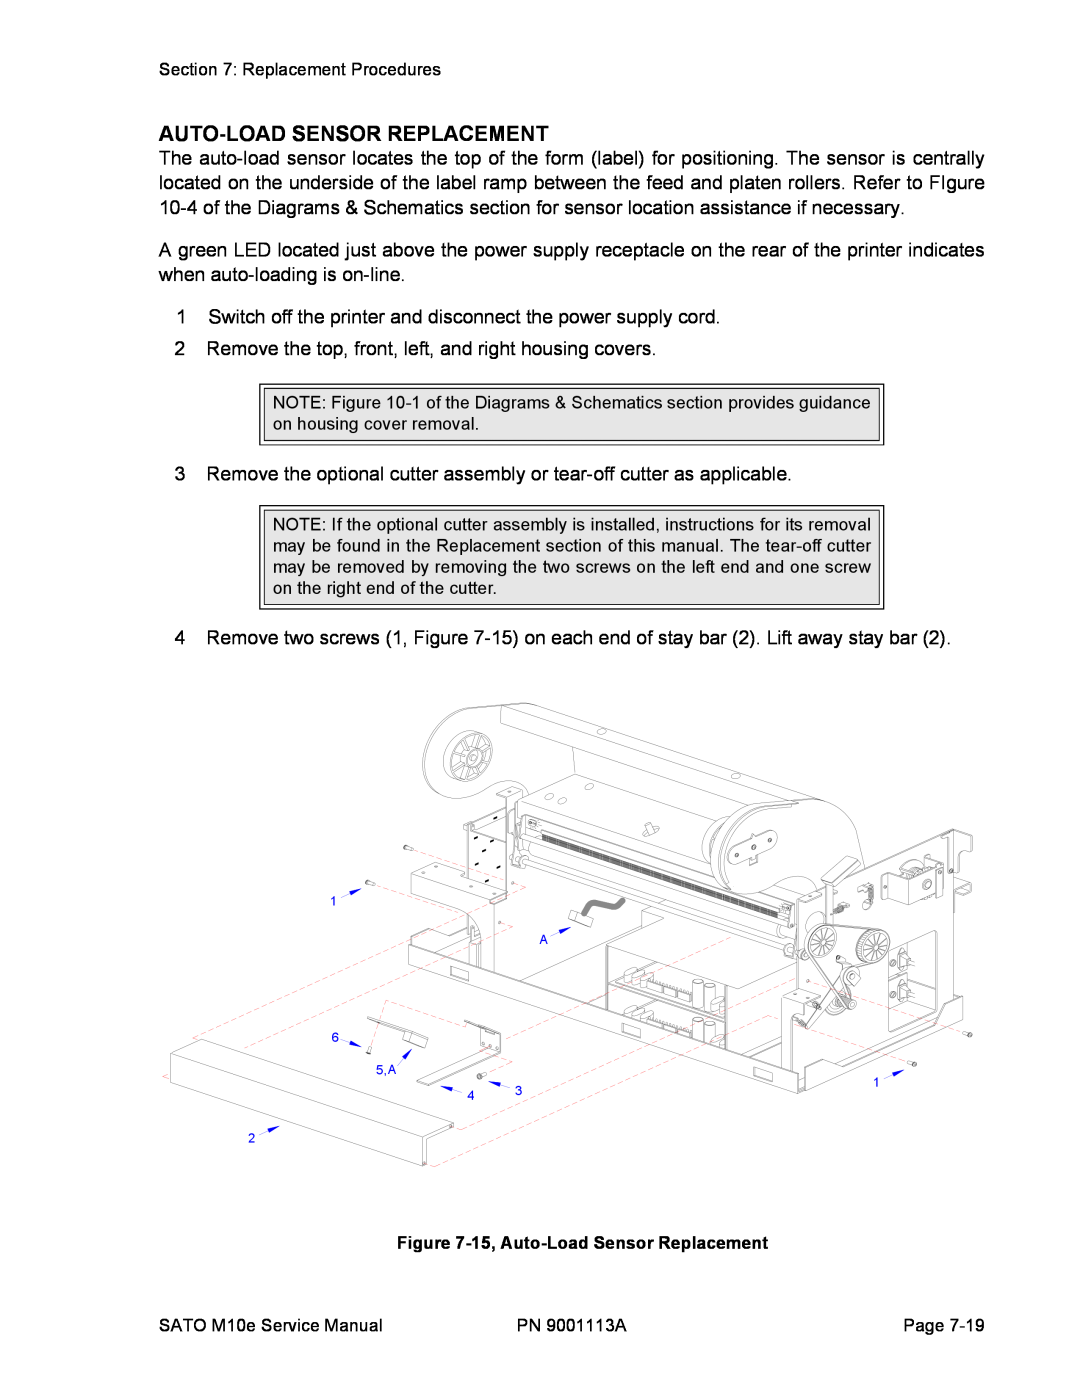 SATO 10e service manual 15, Auto-Load Sensor Replacement 